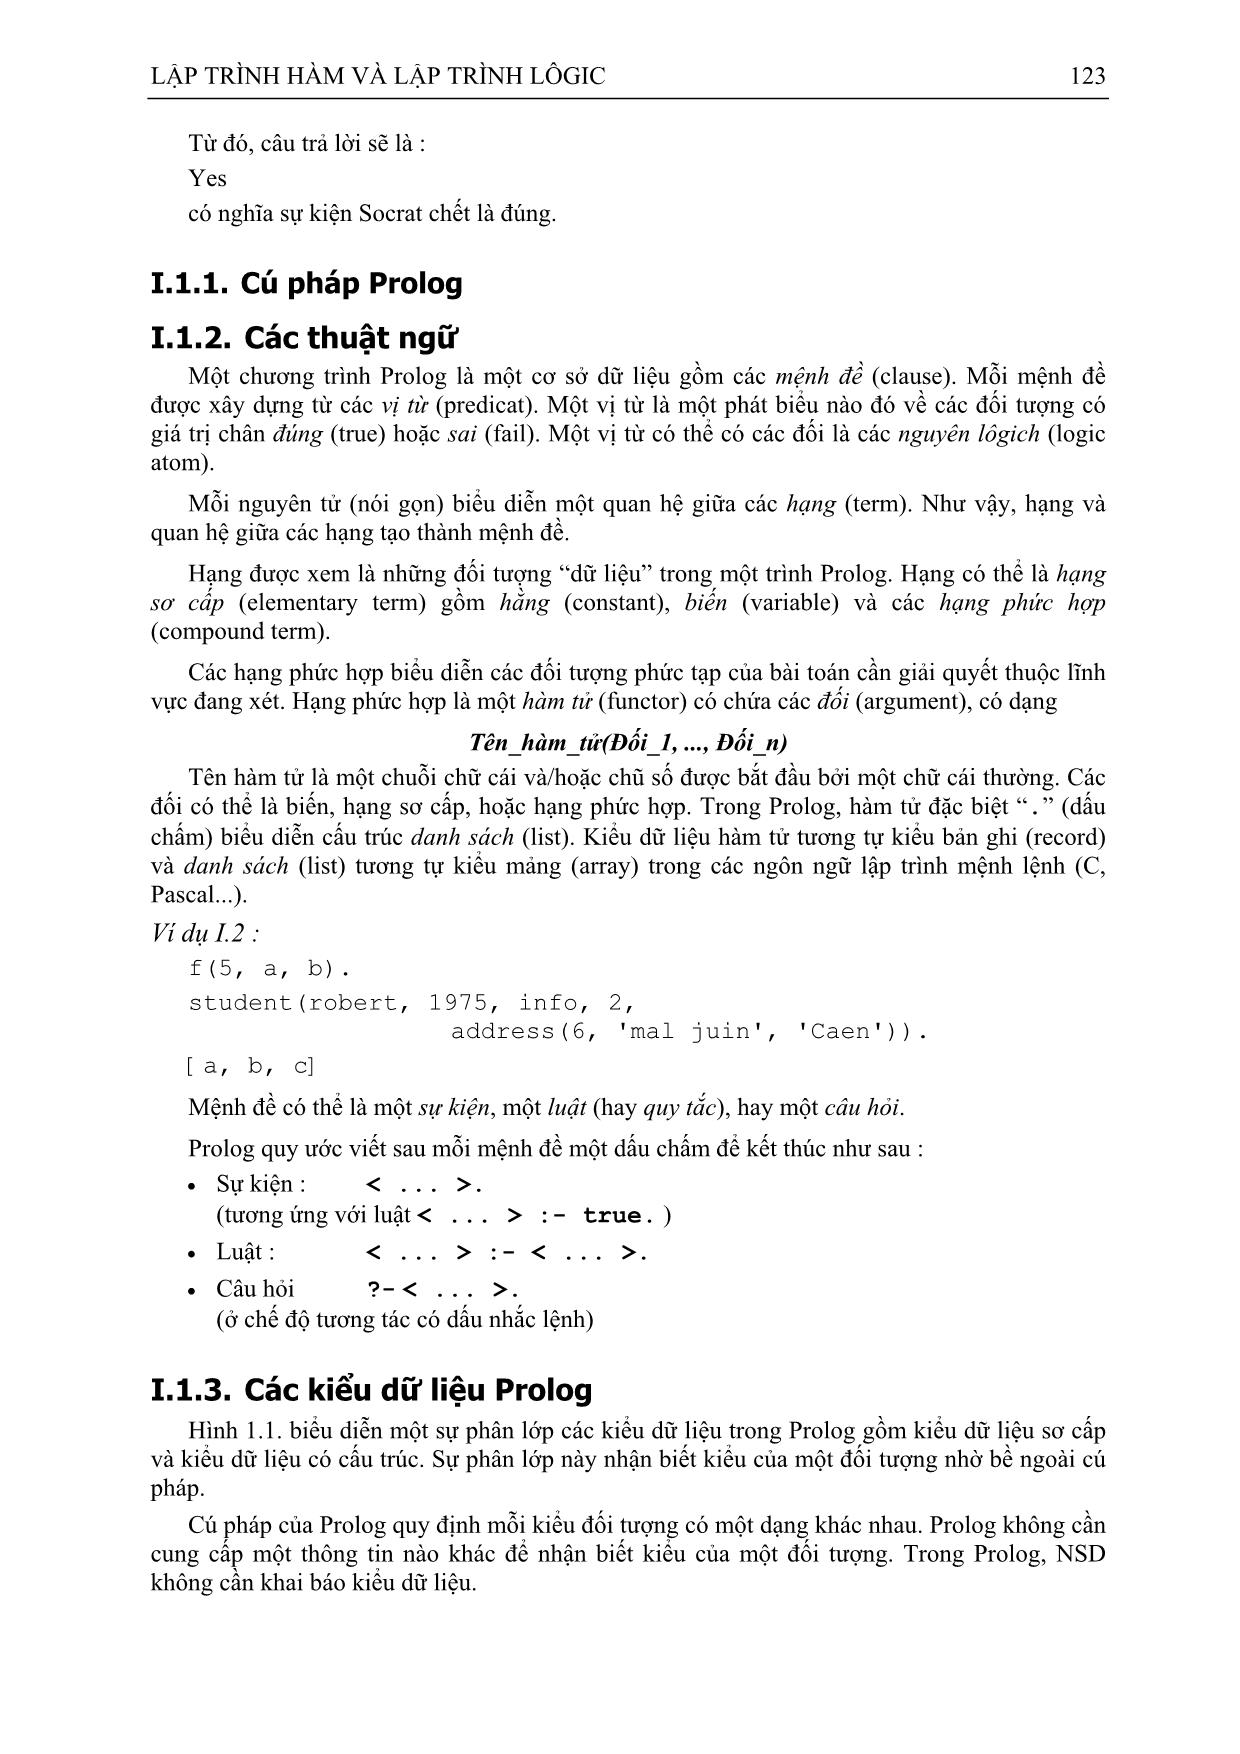 Giáo trình Lập trình hàm và lập trình Logic (Phần 2) trang 2